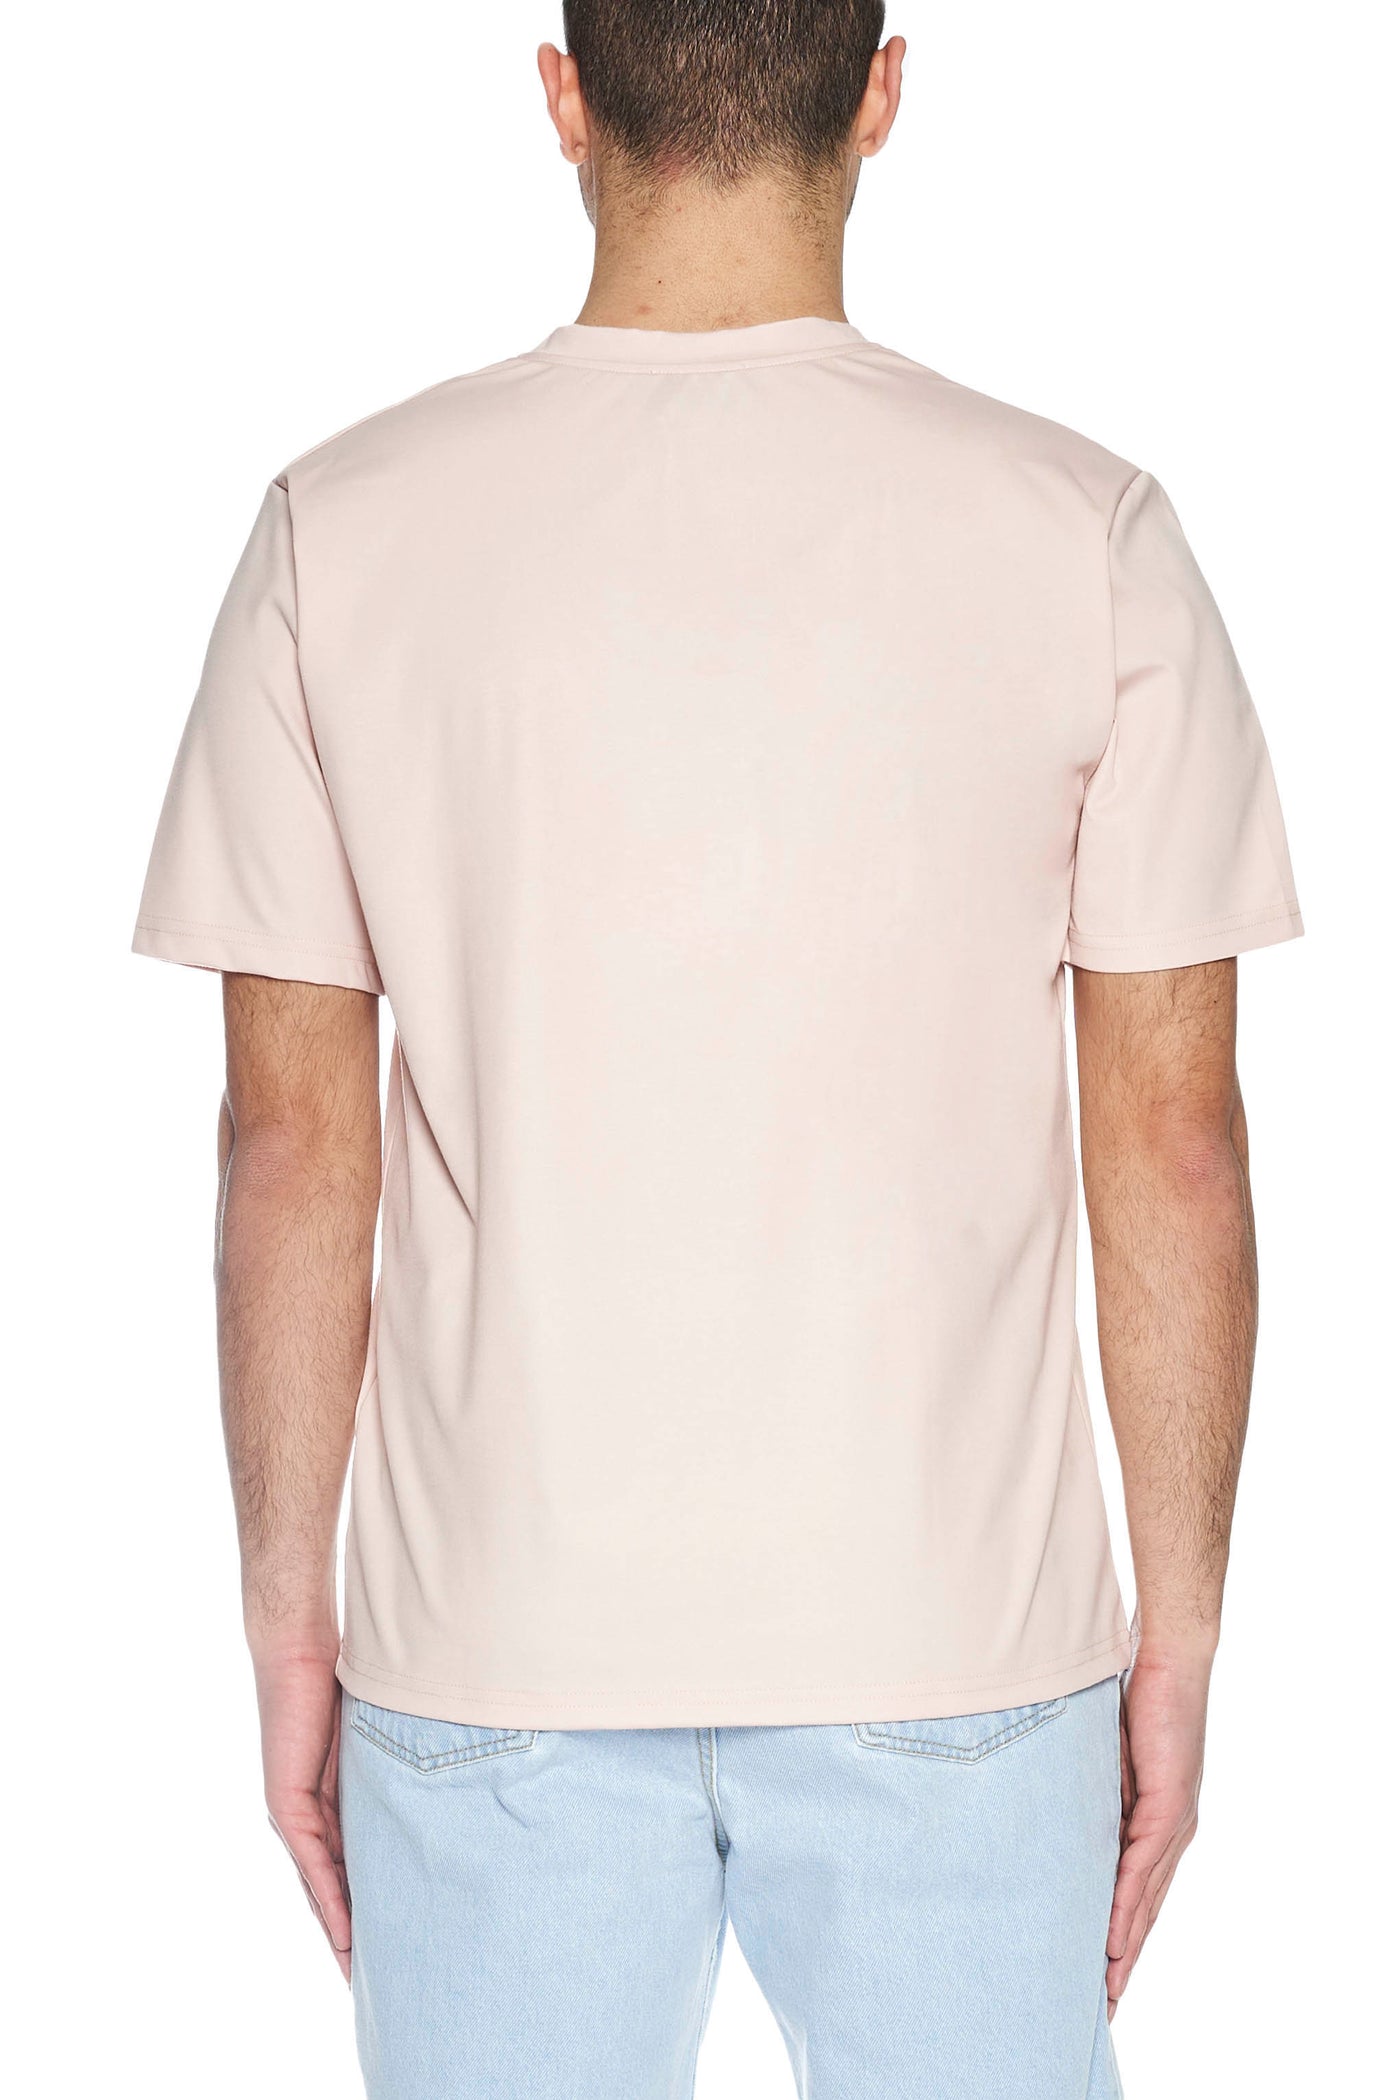 T-Shirt la vie en rose - 3DICI